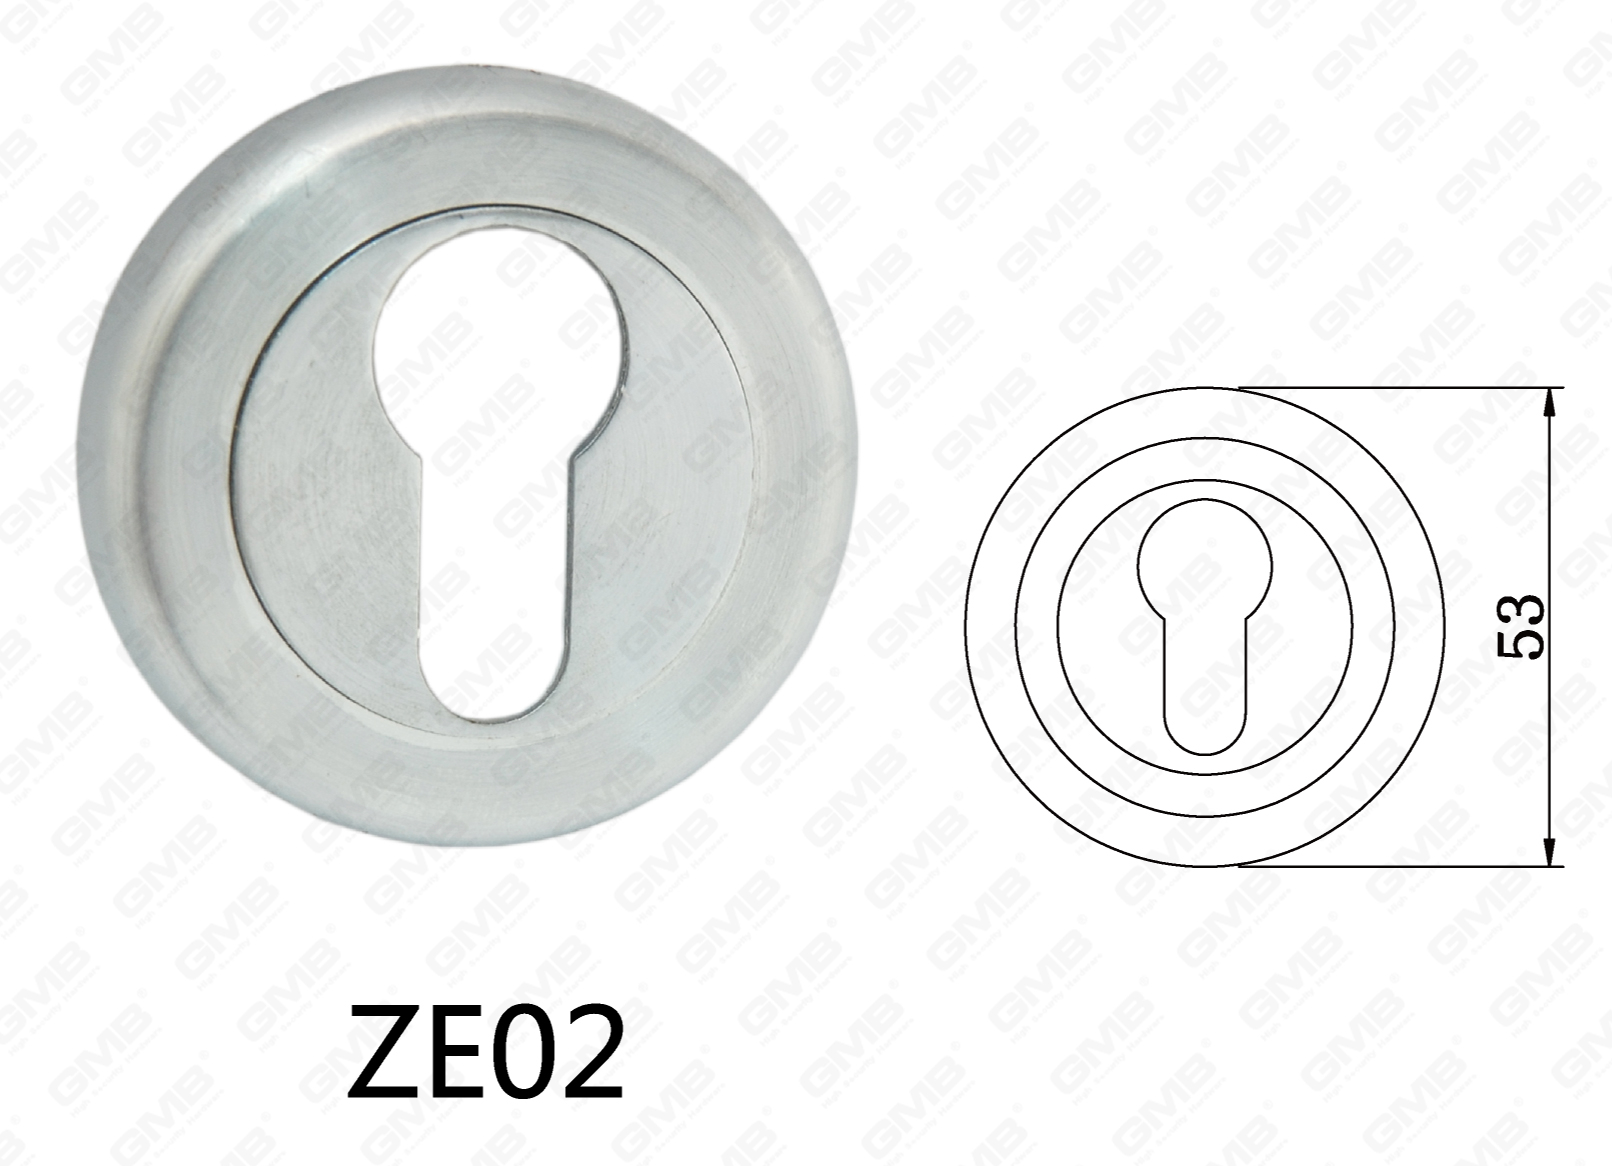 ידית דלת דלת אלומיניום מסגסוגת אבץ Zamak עגולה (ZE02)